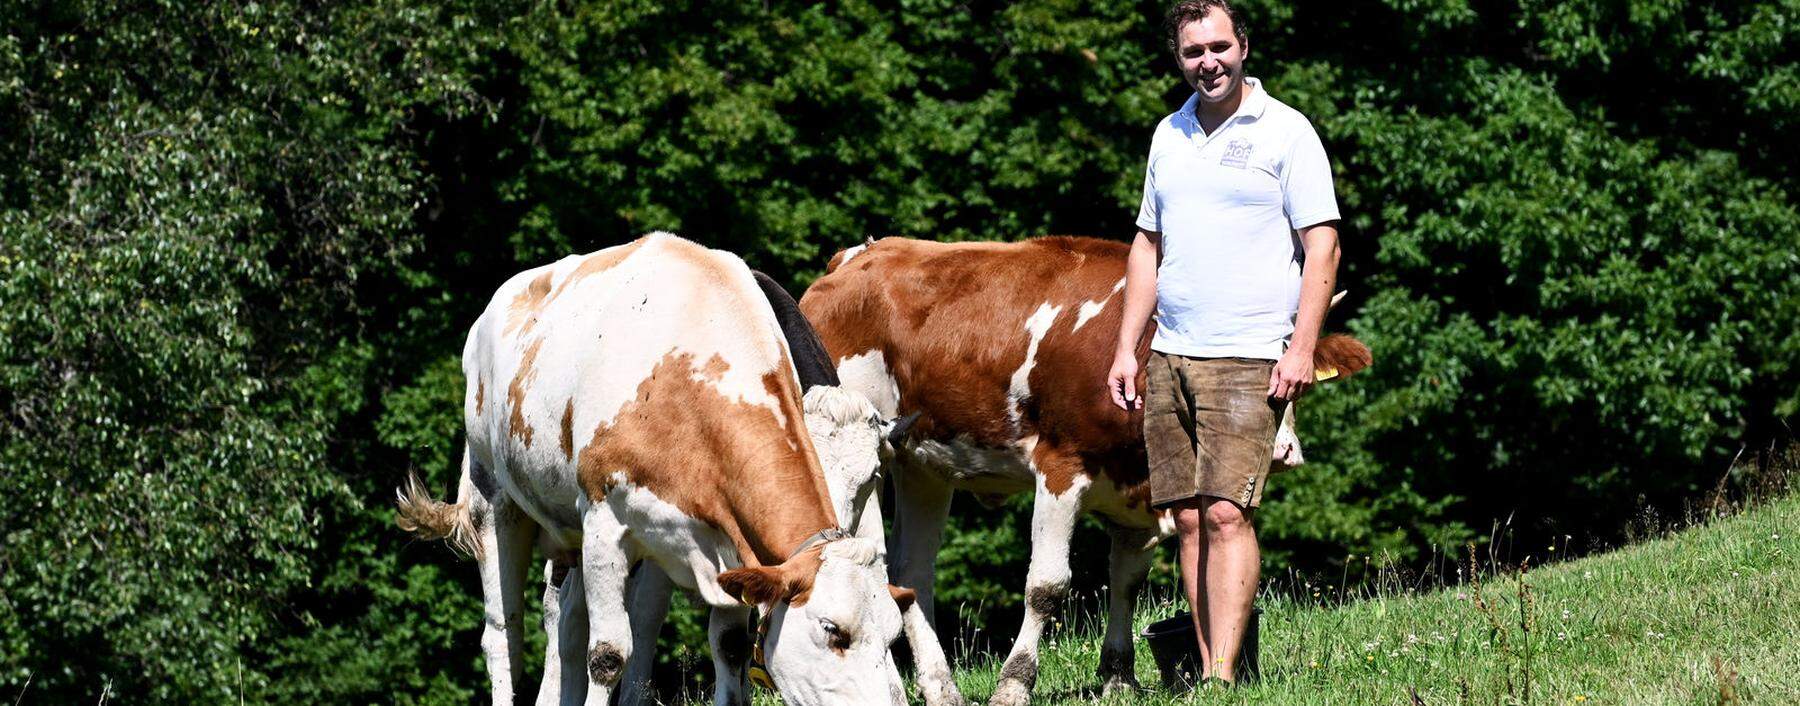  Johann Bertl hält rund 40 Kühe, teilweise auf der Weide (großes Bild) sowie im „Fünf-Sterne-Kuhstall“, wie er ihn nennt. Dieser ist mit Stroh ausgelegt und bietet viele Freiflächen. Aus der Milch werden Schulmilch, Joghurt, Butter, Topfen und Käse gemacht.